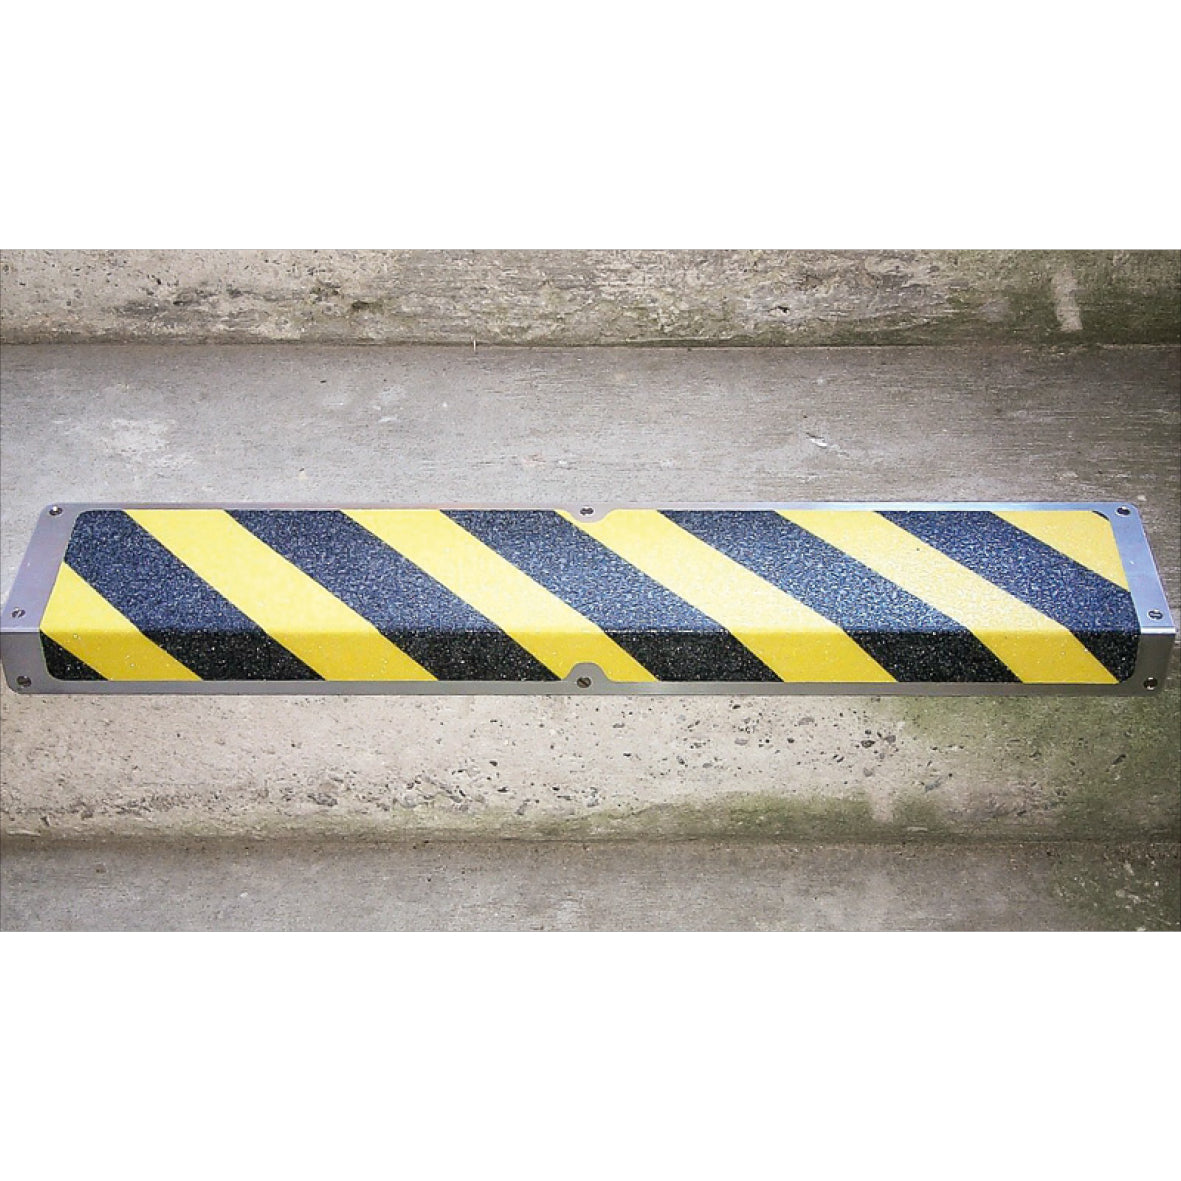 Antirutsch Treppkante Alu, Nachleuchtend SG "Caution" 120x635x45mm